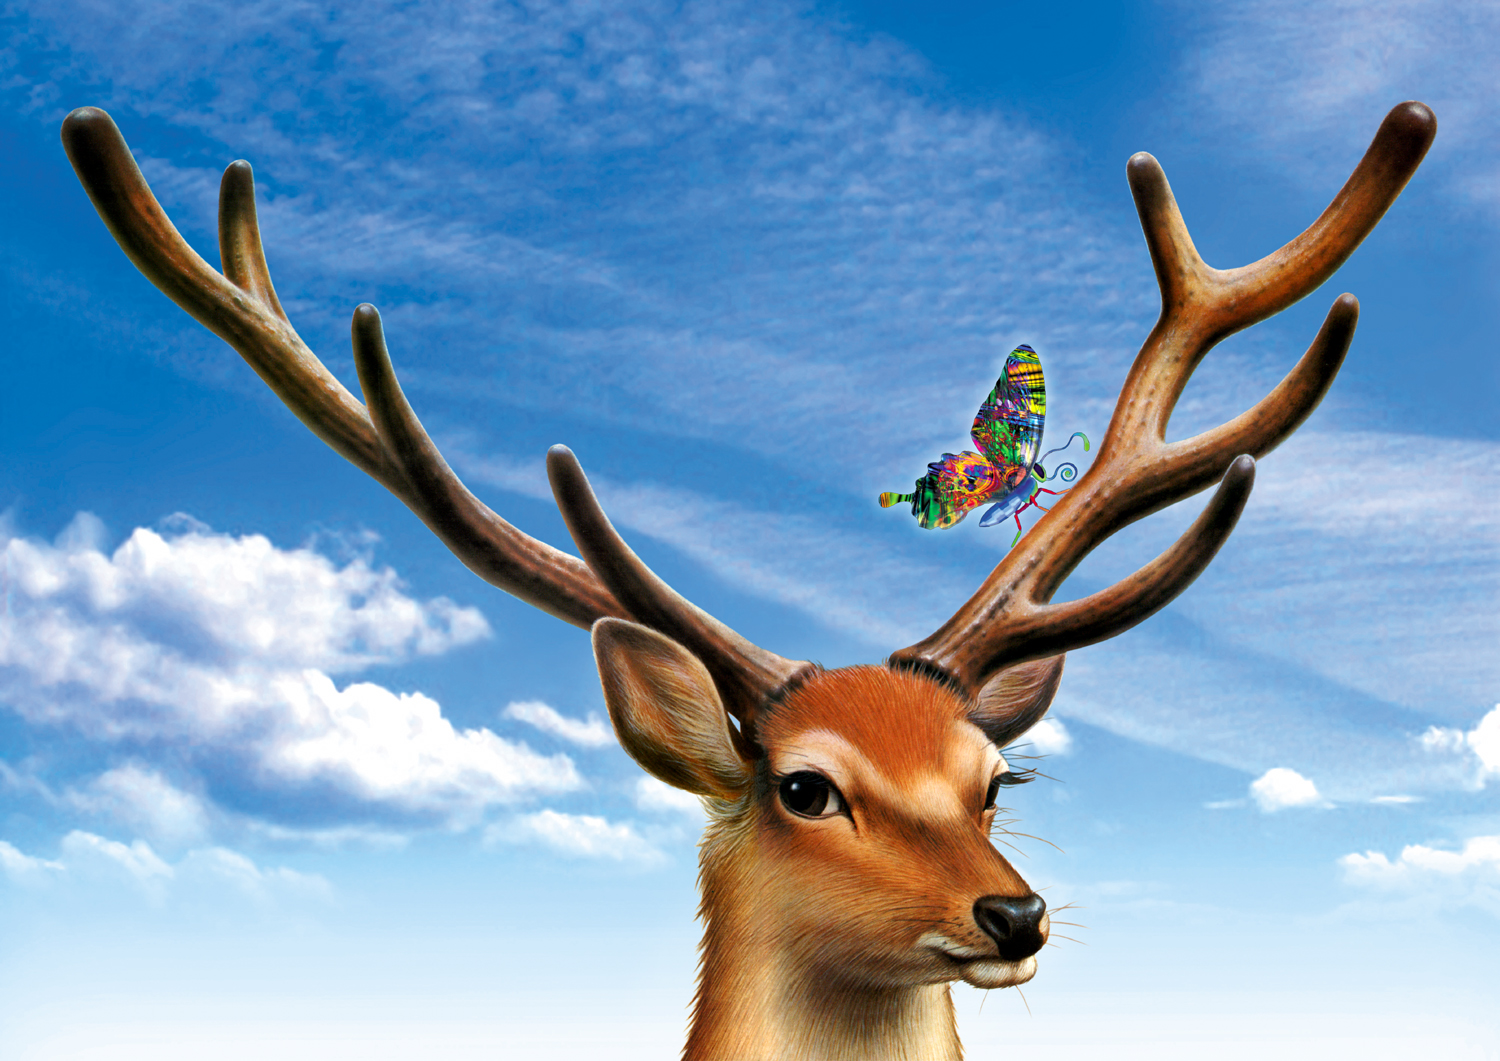 外園 勉 アートの職人 No Twitter シカと蝶のイラストを組み合わせて新しい作品にしてみました 30年前の手描きのシカと 2年前に撮影した空と 今年創作した蝶 を使って時を越えた作品です 鹿 科学絵本 リキテックス リアルイラスト レタッチ デジタル